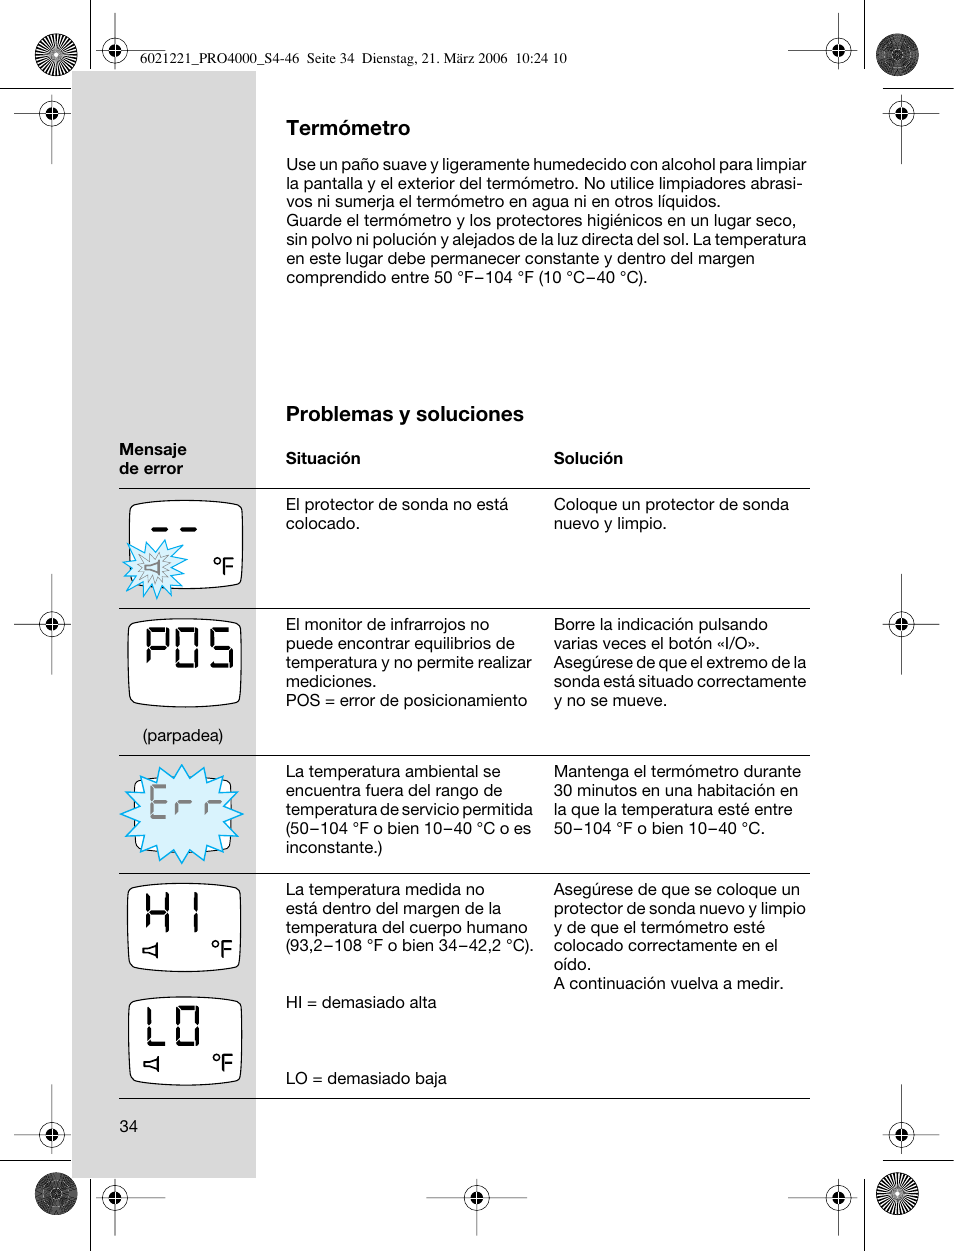 Termómetro, Problemas y soluciones | Braun ThermoScan PRO 4000 User Manual  | Page 34 / 46 | Original mode